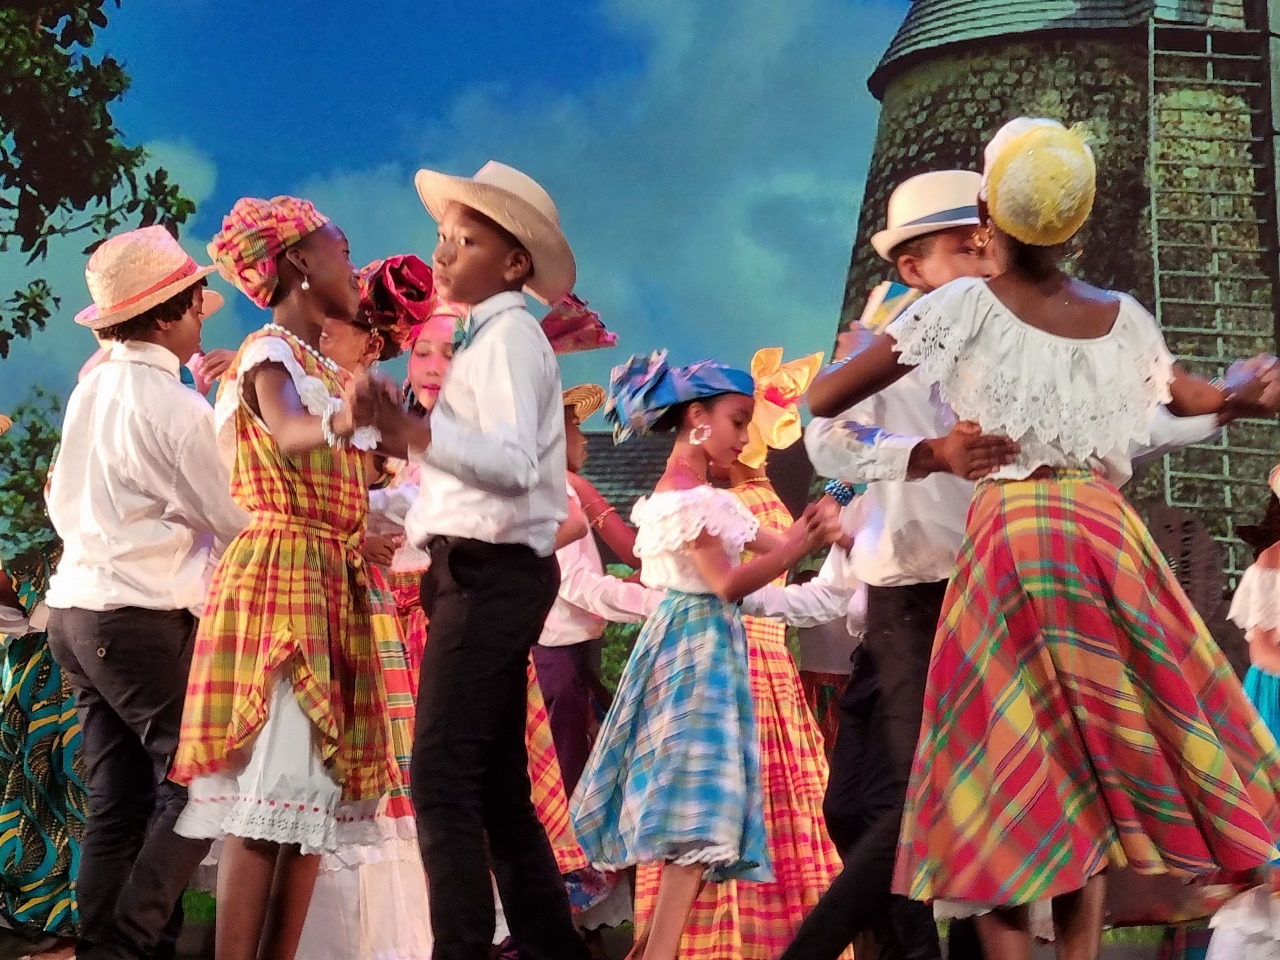     Les primaires de Bouillon font leur show à l’Artchipel à Basse-Terre

